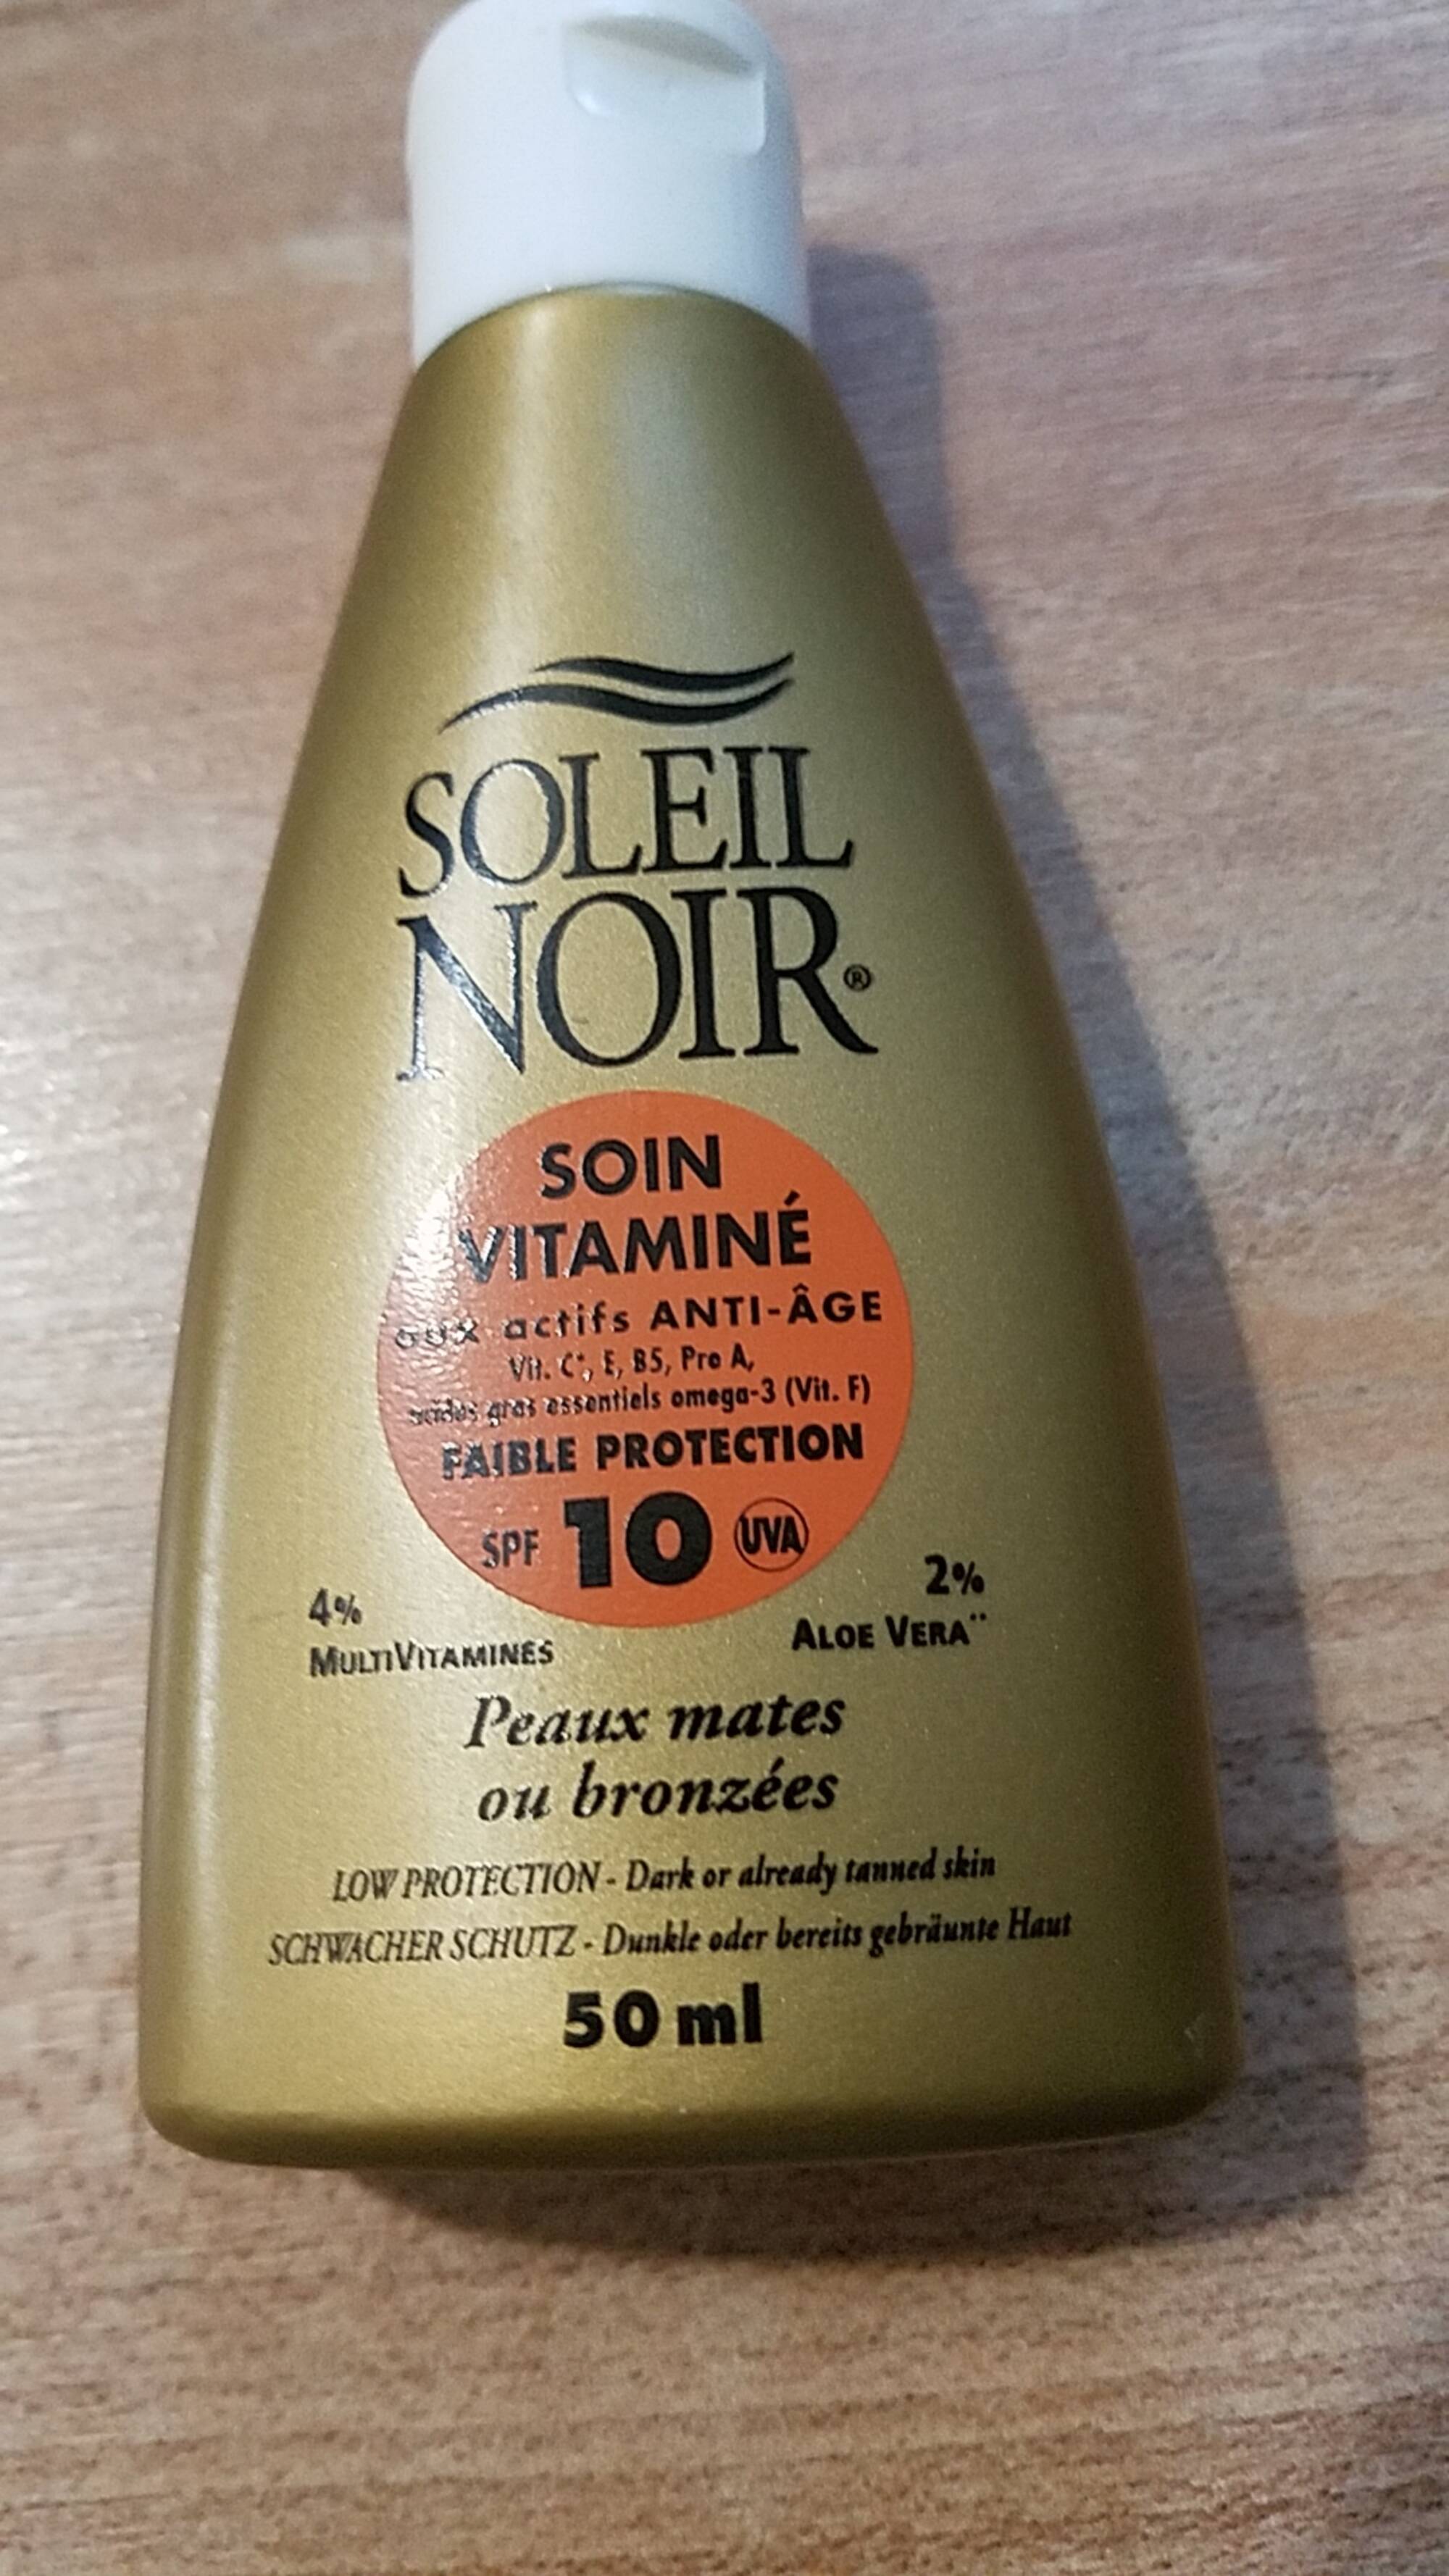 SOLEIL NOIR - Soin vitaminé aux actifs anti-âge peaux mates ou bronzées 